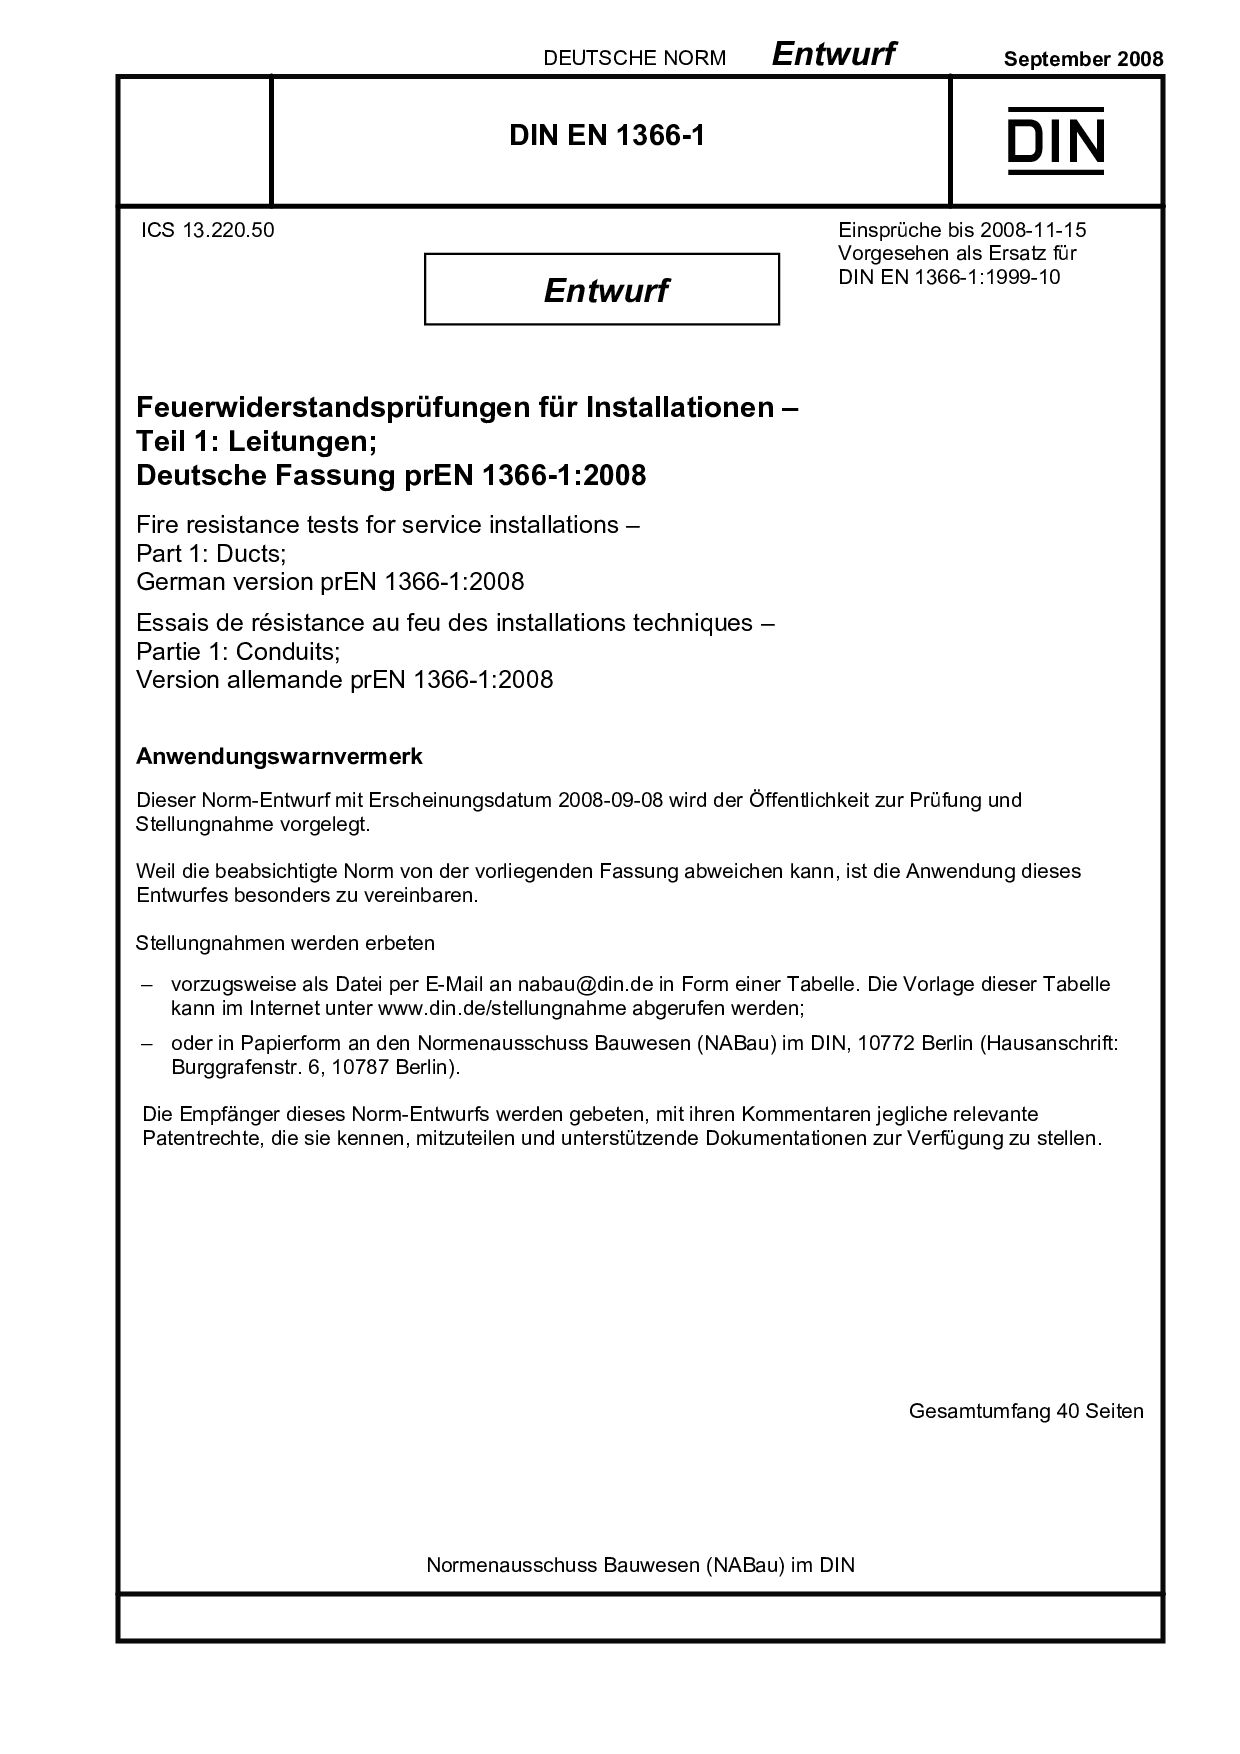 DIN EN 1366-1 E:2008-09